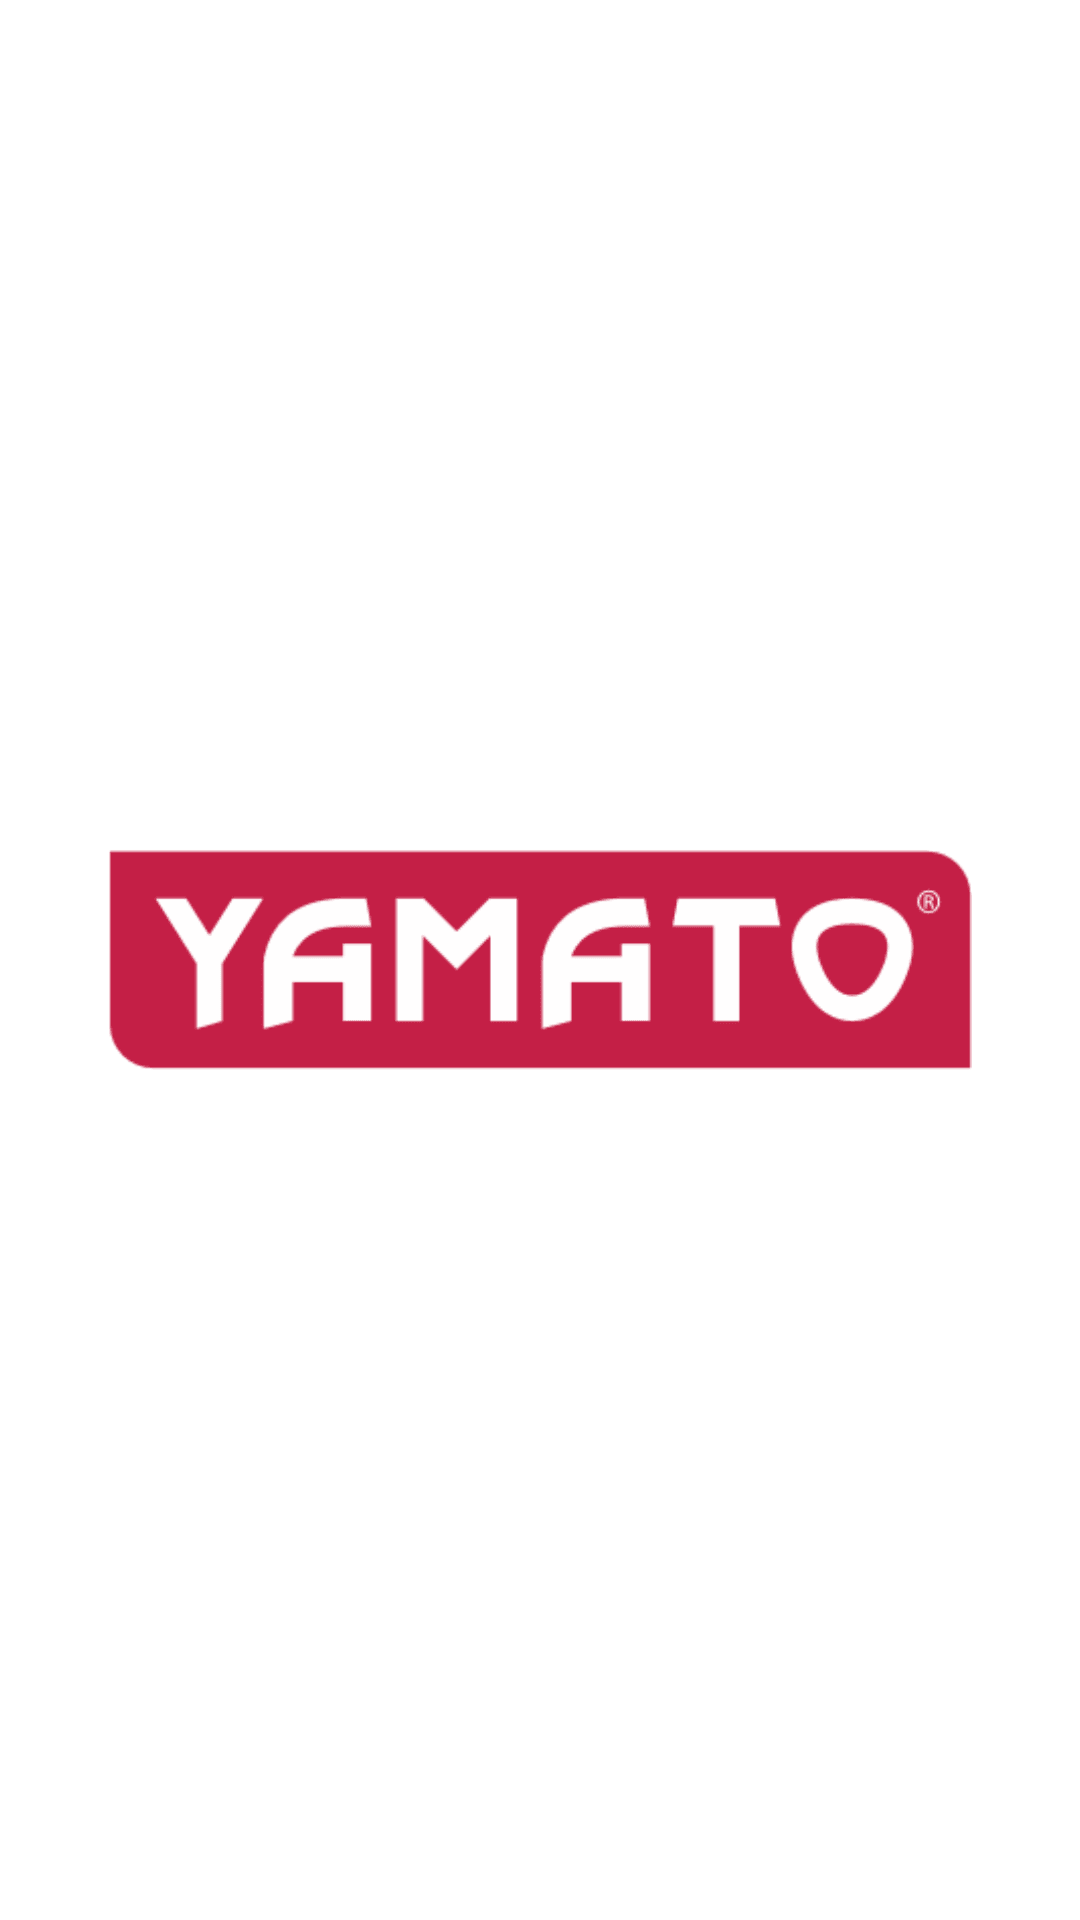 Yamato - Troncatrice p/legno combinata elettrica mm.210 1200W Yamato